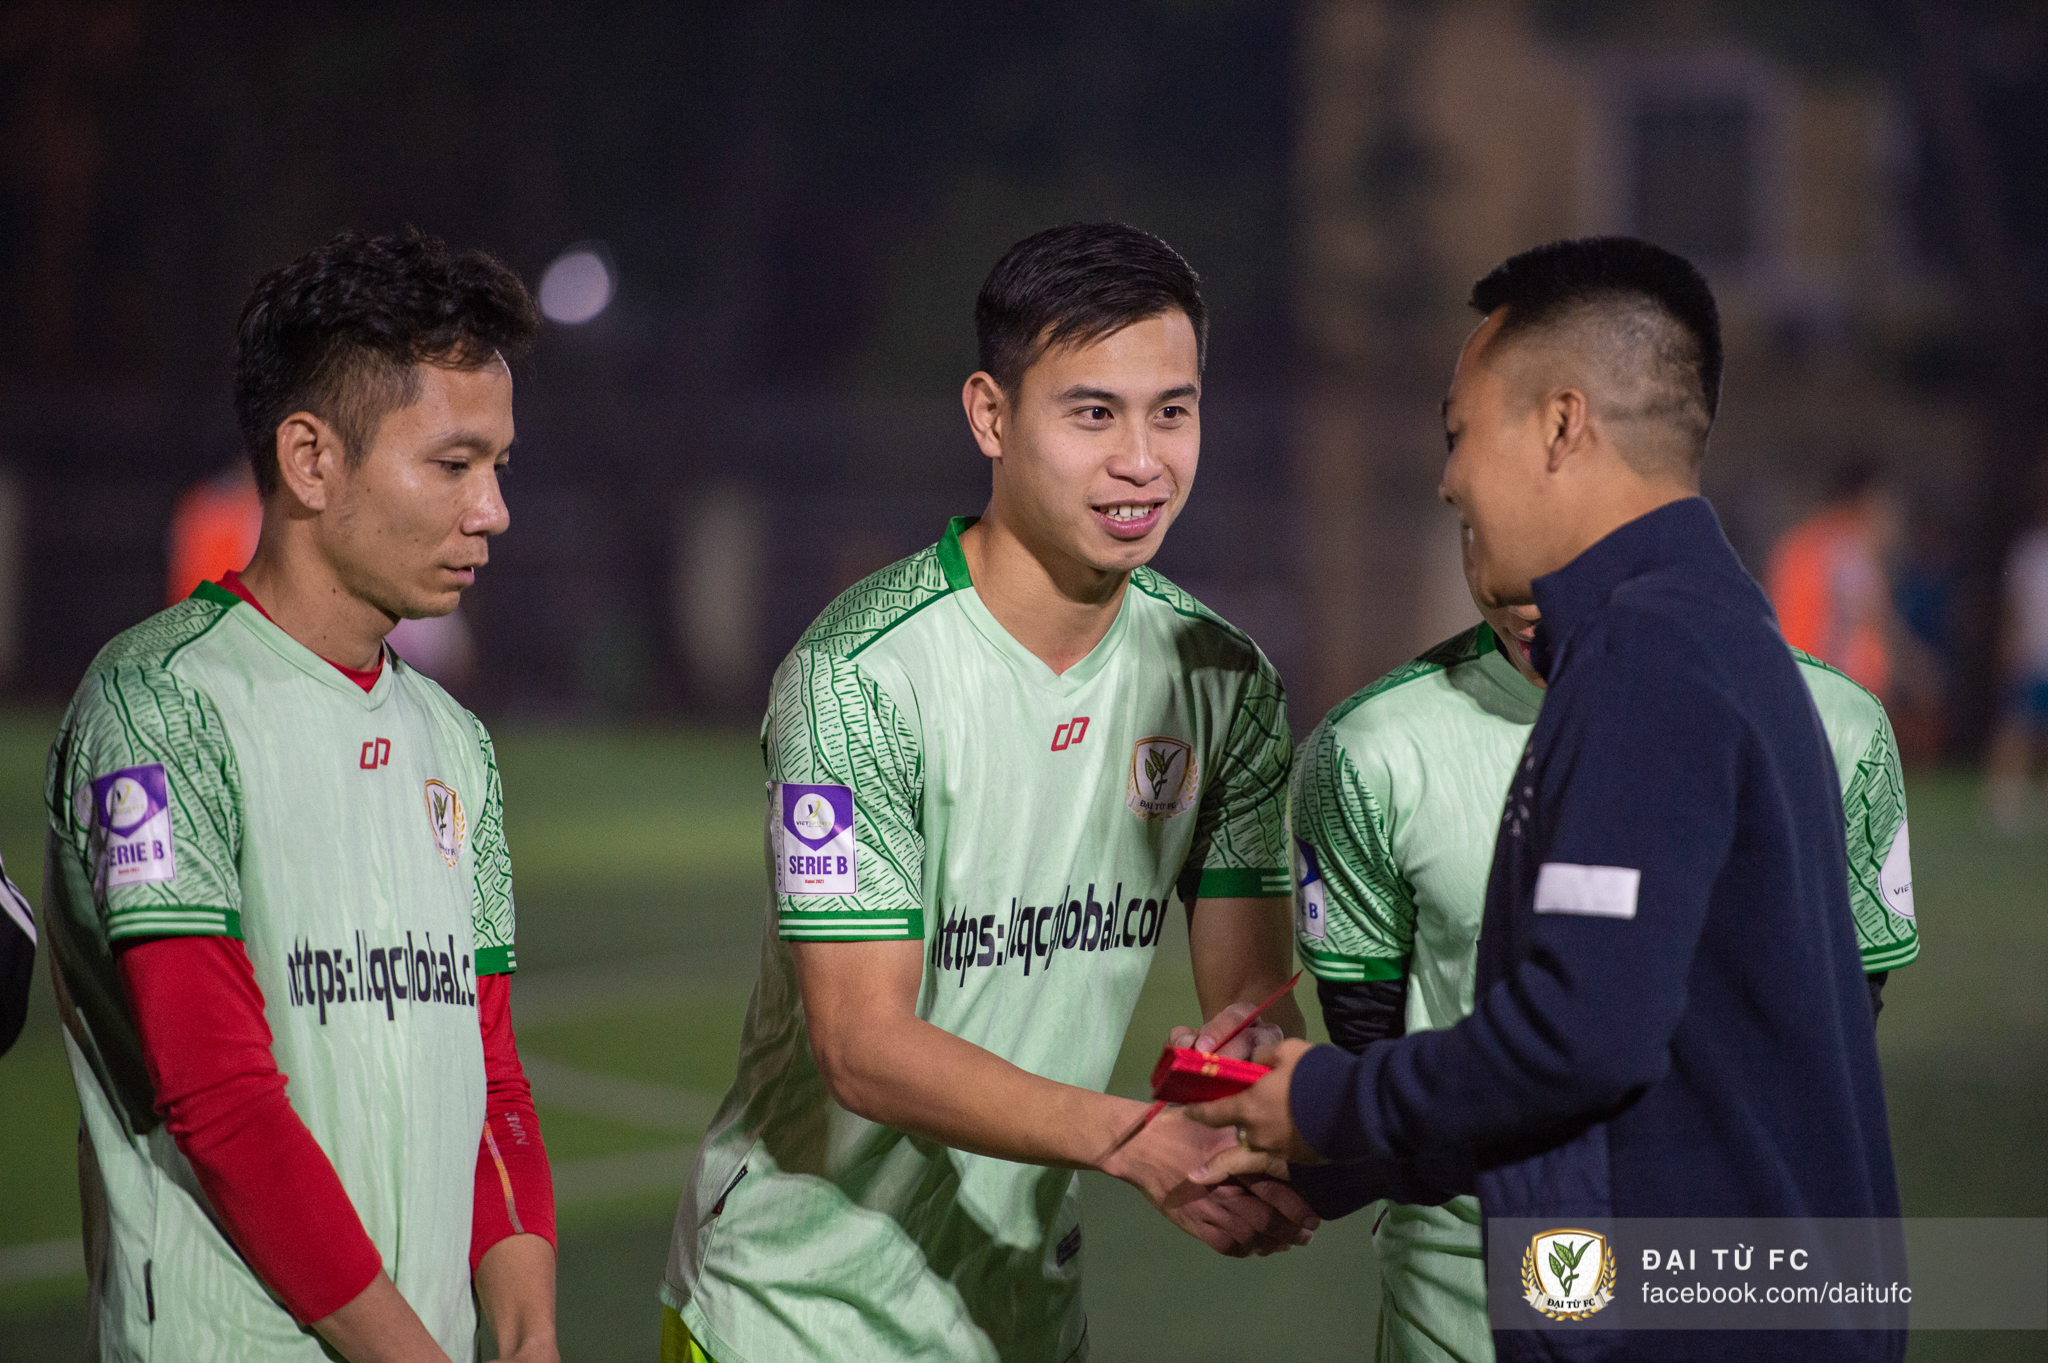 Việt Phong sau khi giải nghệ đã tìm được bến đỗ mới là đội bóng phong trào tham vọng tại Hà Nội 